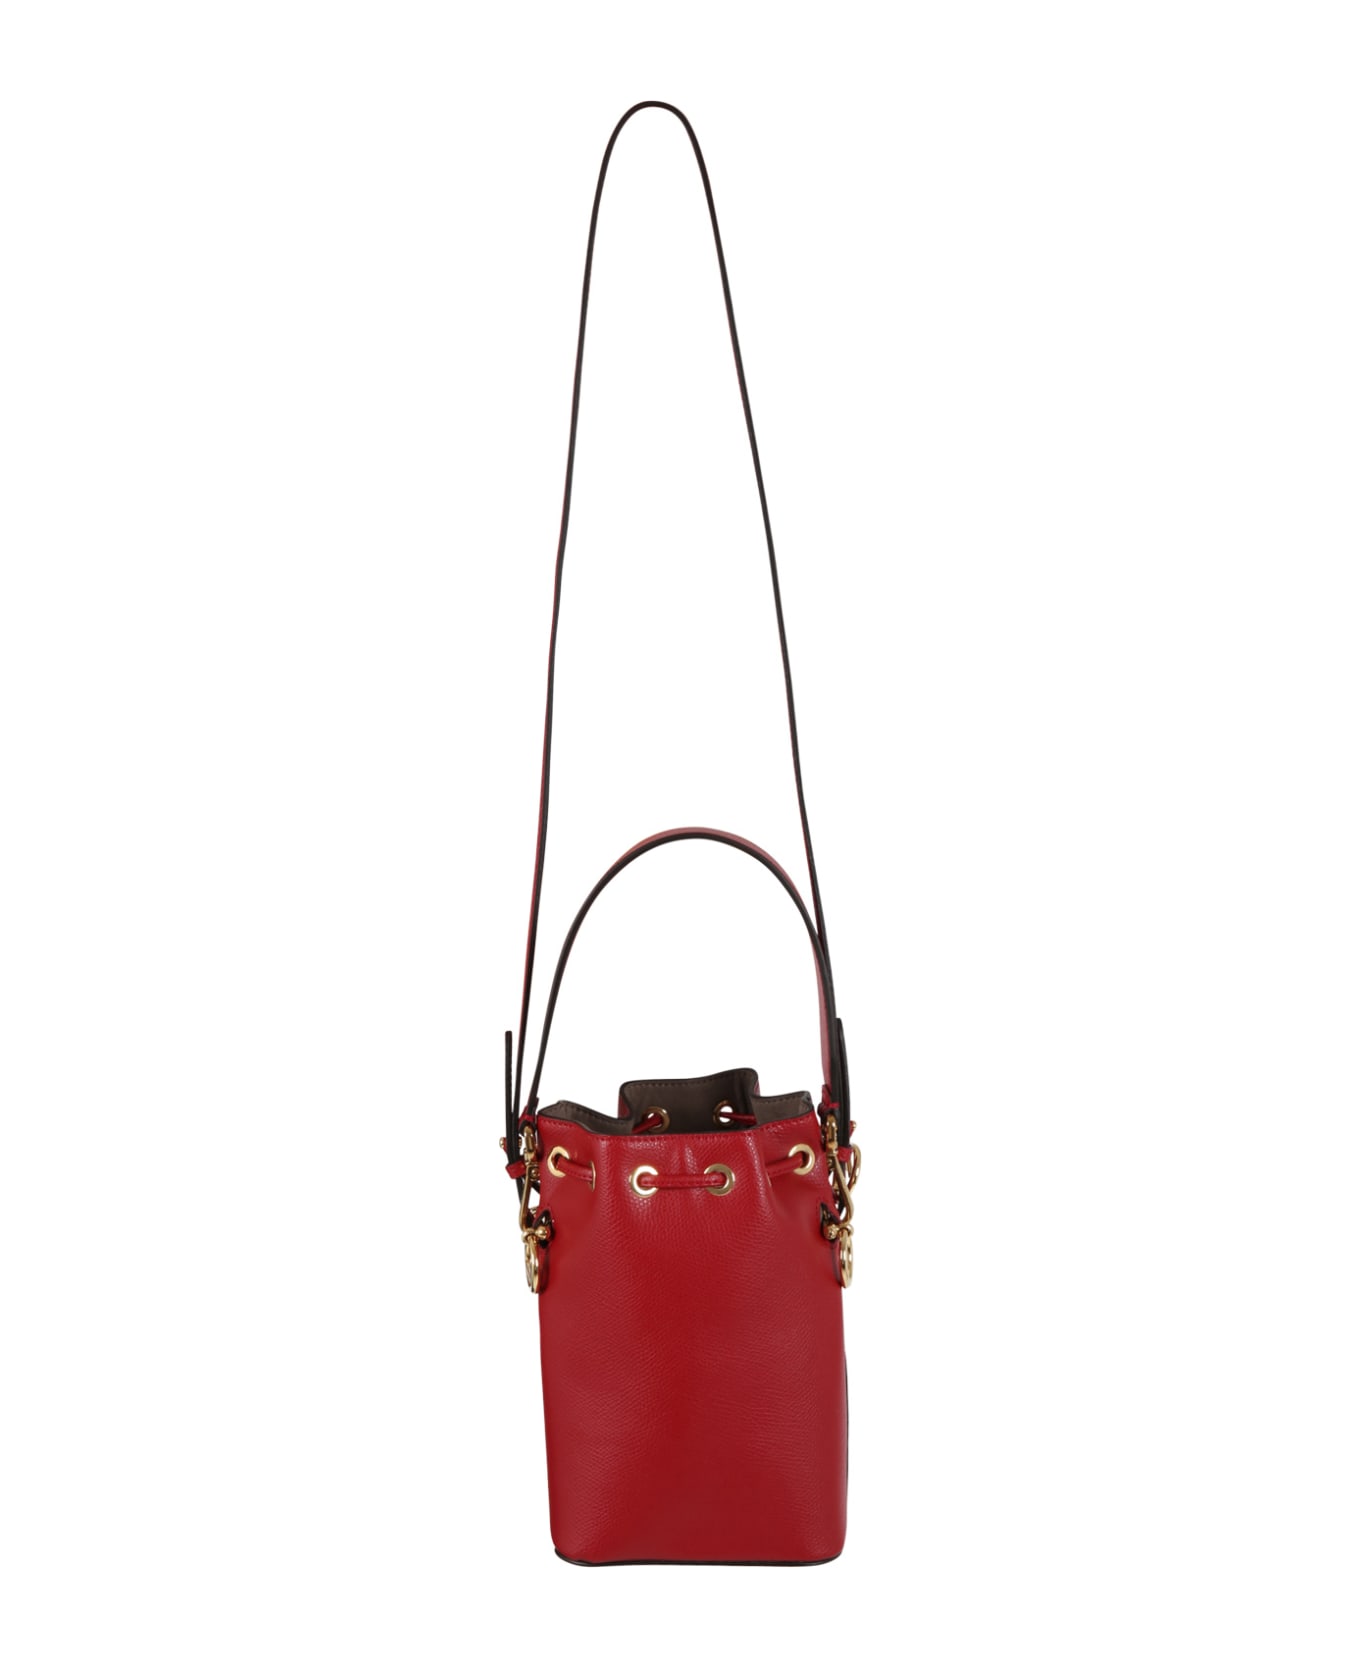 Fendi Red Bag For Girl - Red